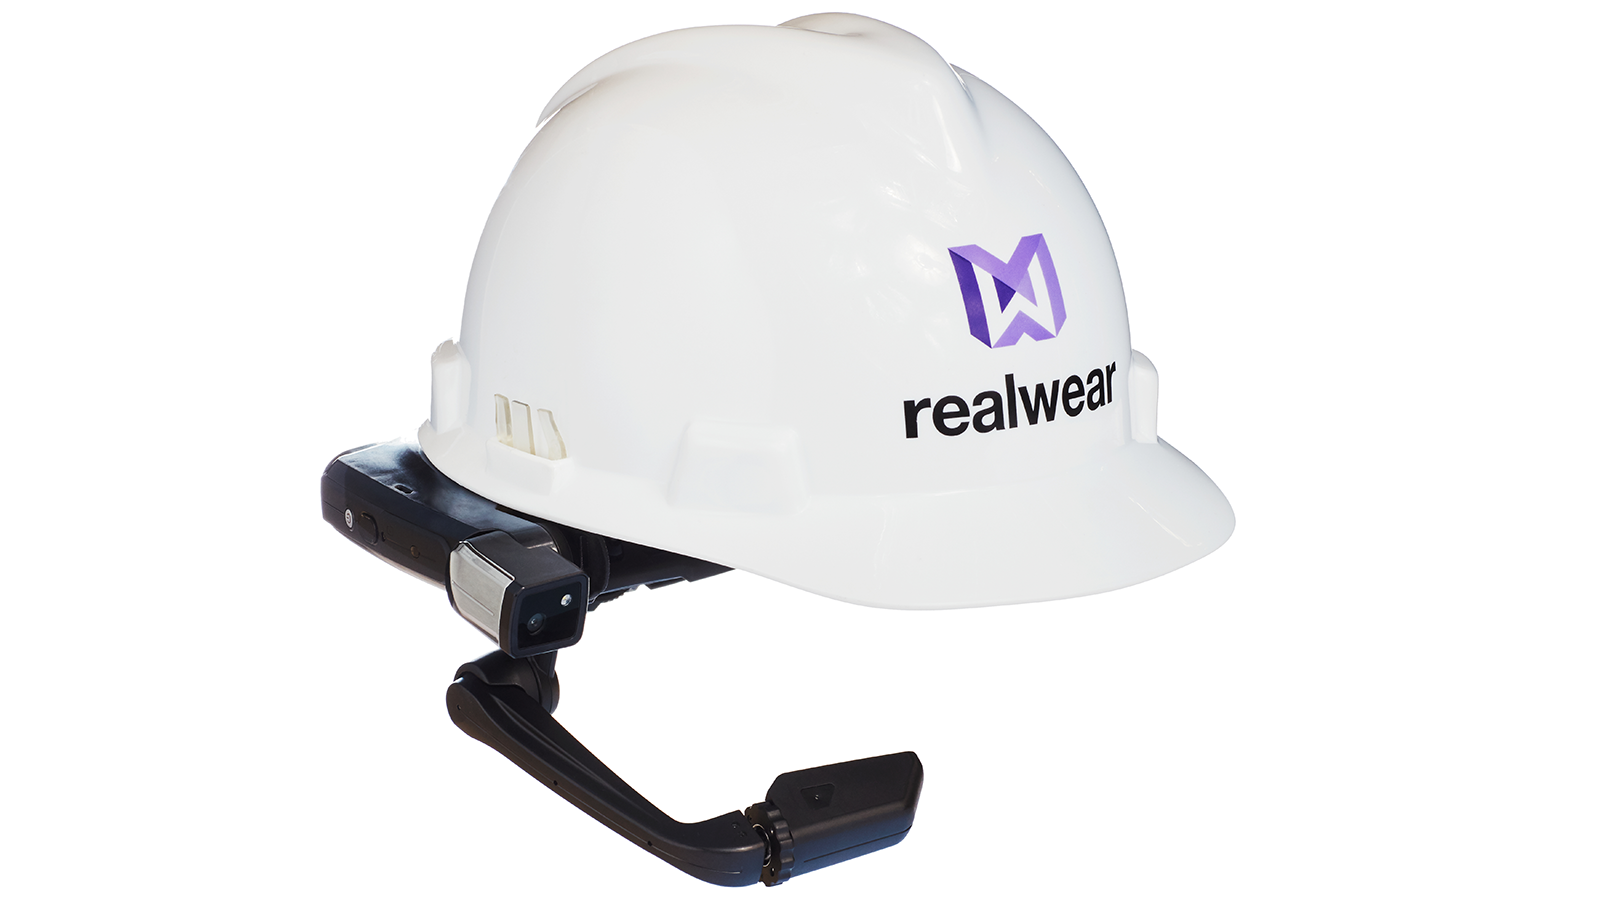 RealWear 头盔的图像。